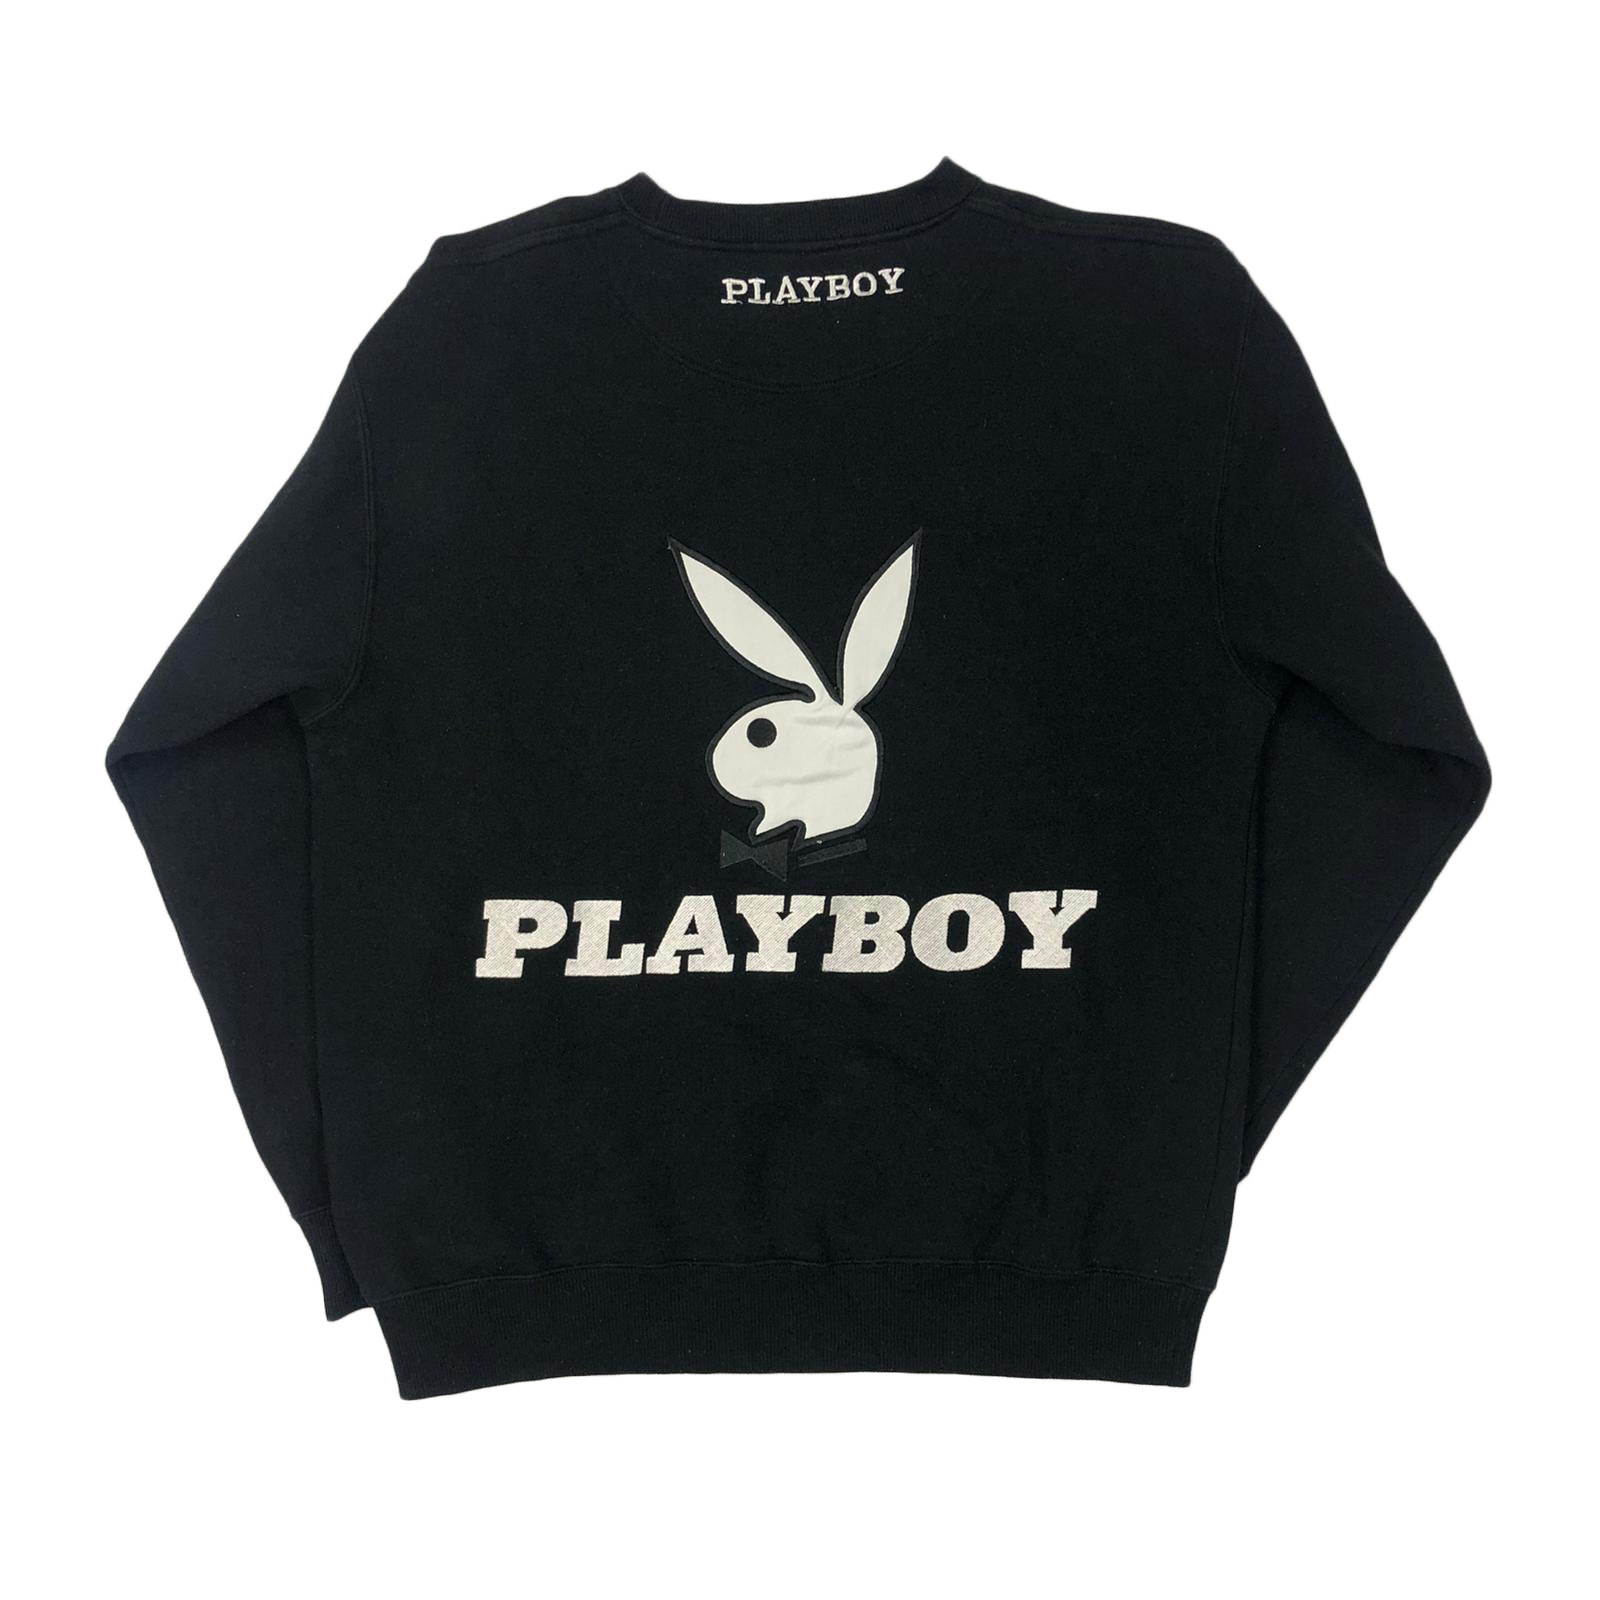 Playboy sweatshirt